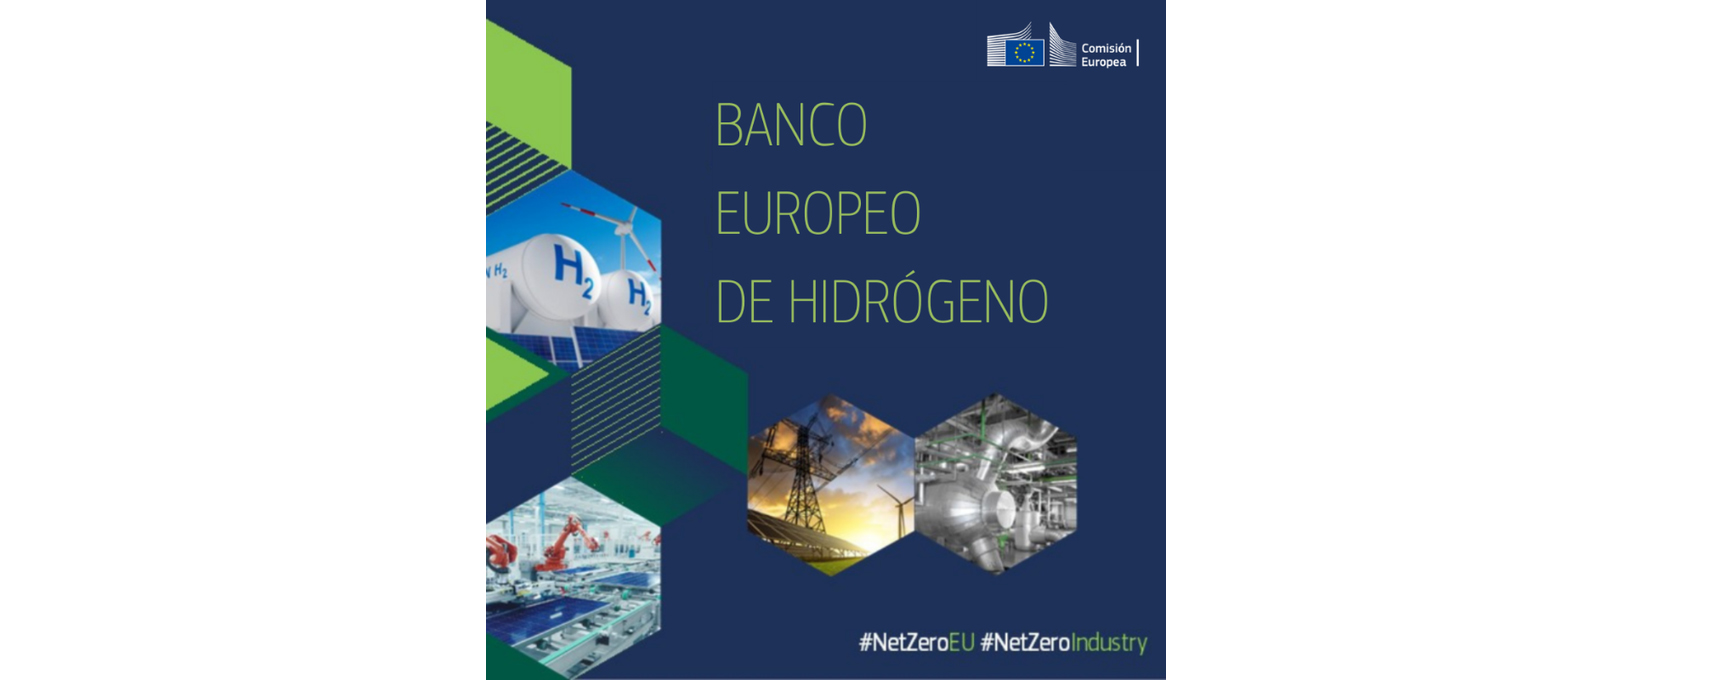 La Comisión Europea convoca la primera subasta del Banco Europeo del Hidrógeno con 800 millones de euros en subvenciones para la producción de hidrógeno renovable